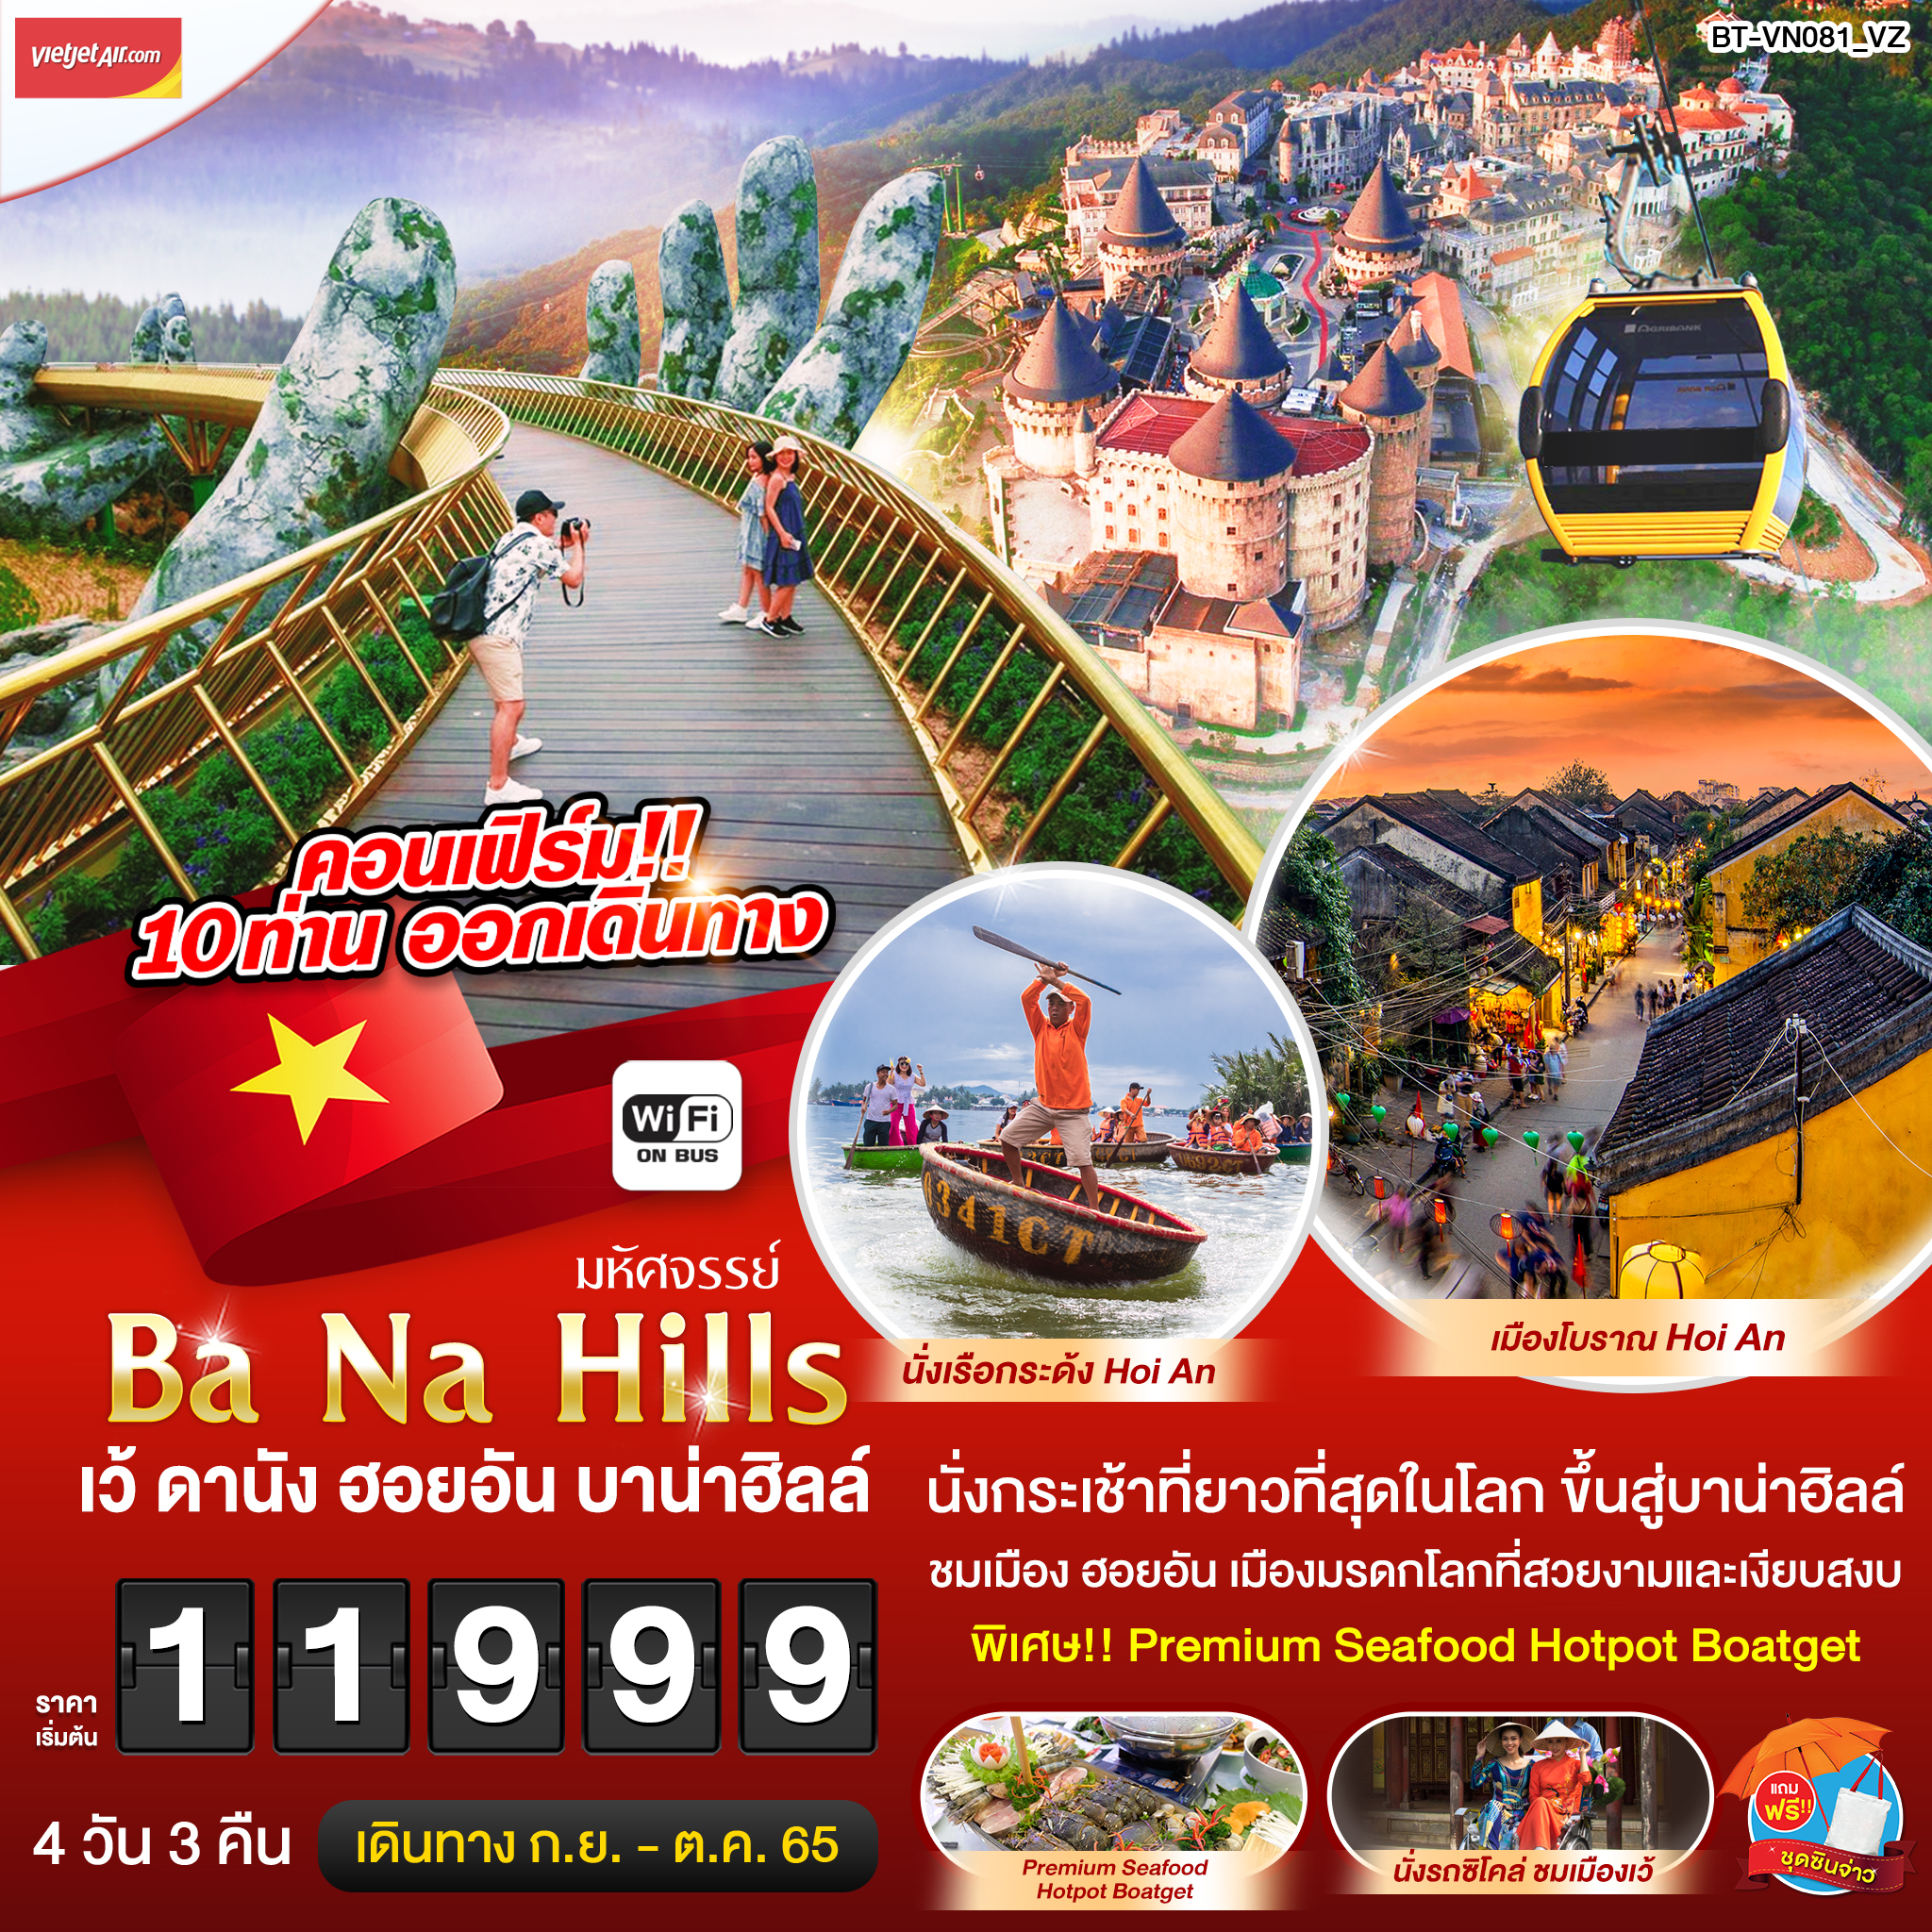 มหัศจรรย์...บาน่าฮิลล์ เว้ ดานัง ฮอยอัน 4 วัน 3 คืน โดยสายการบิน Thai Vietjet (SEP-OCT22)